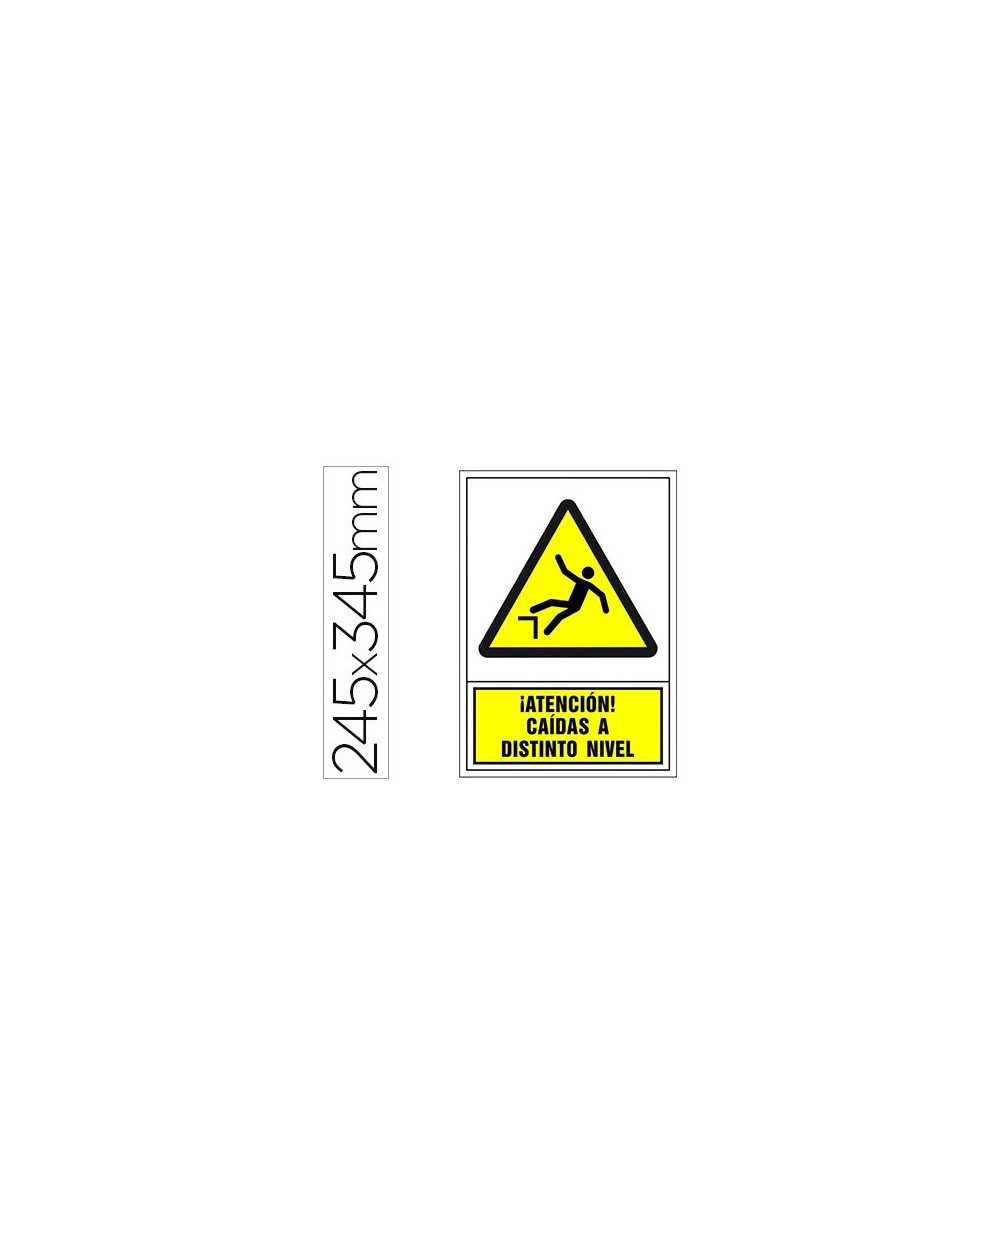 Pictograma syssa senal de advertencia atencion caidas a distinto nivel en pvc 245x345 mm